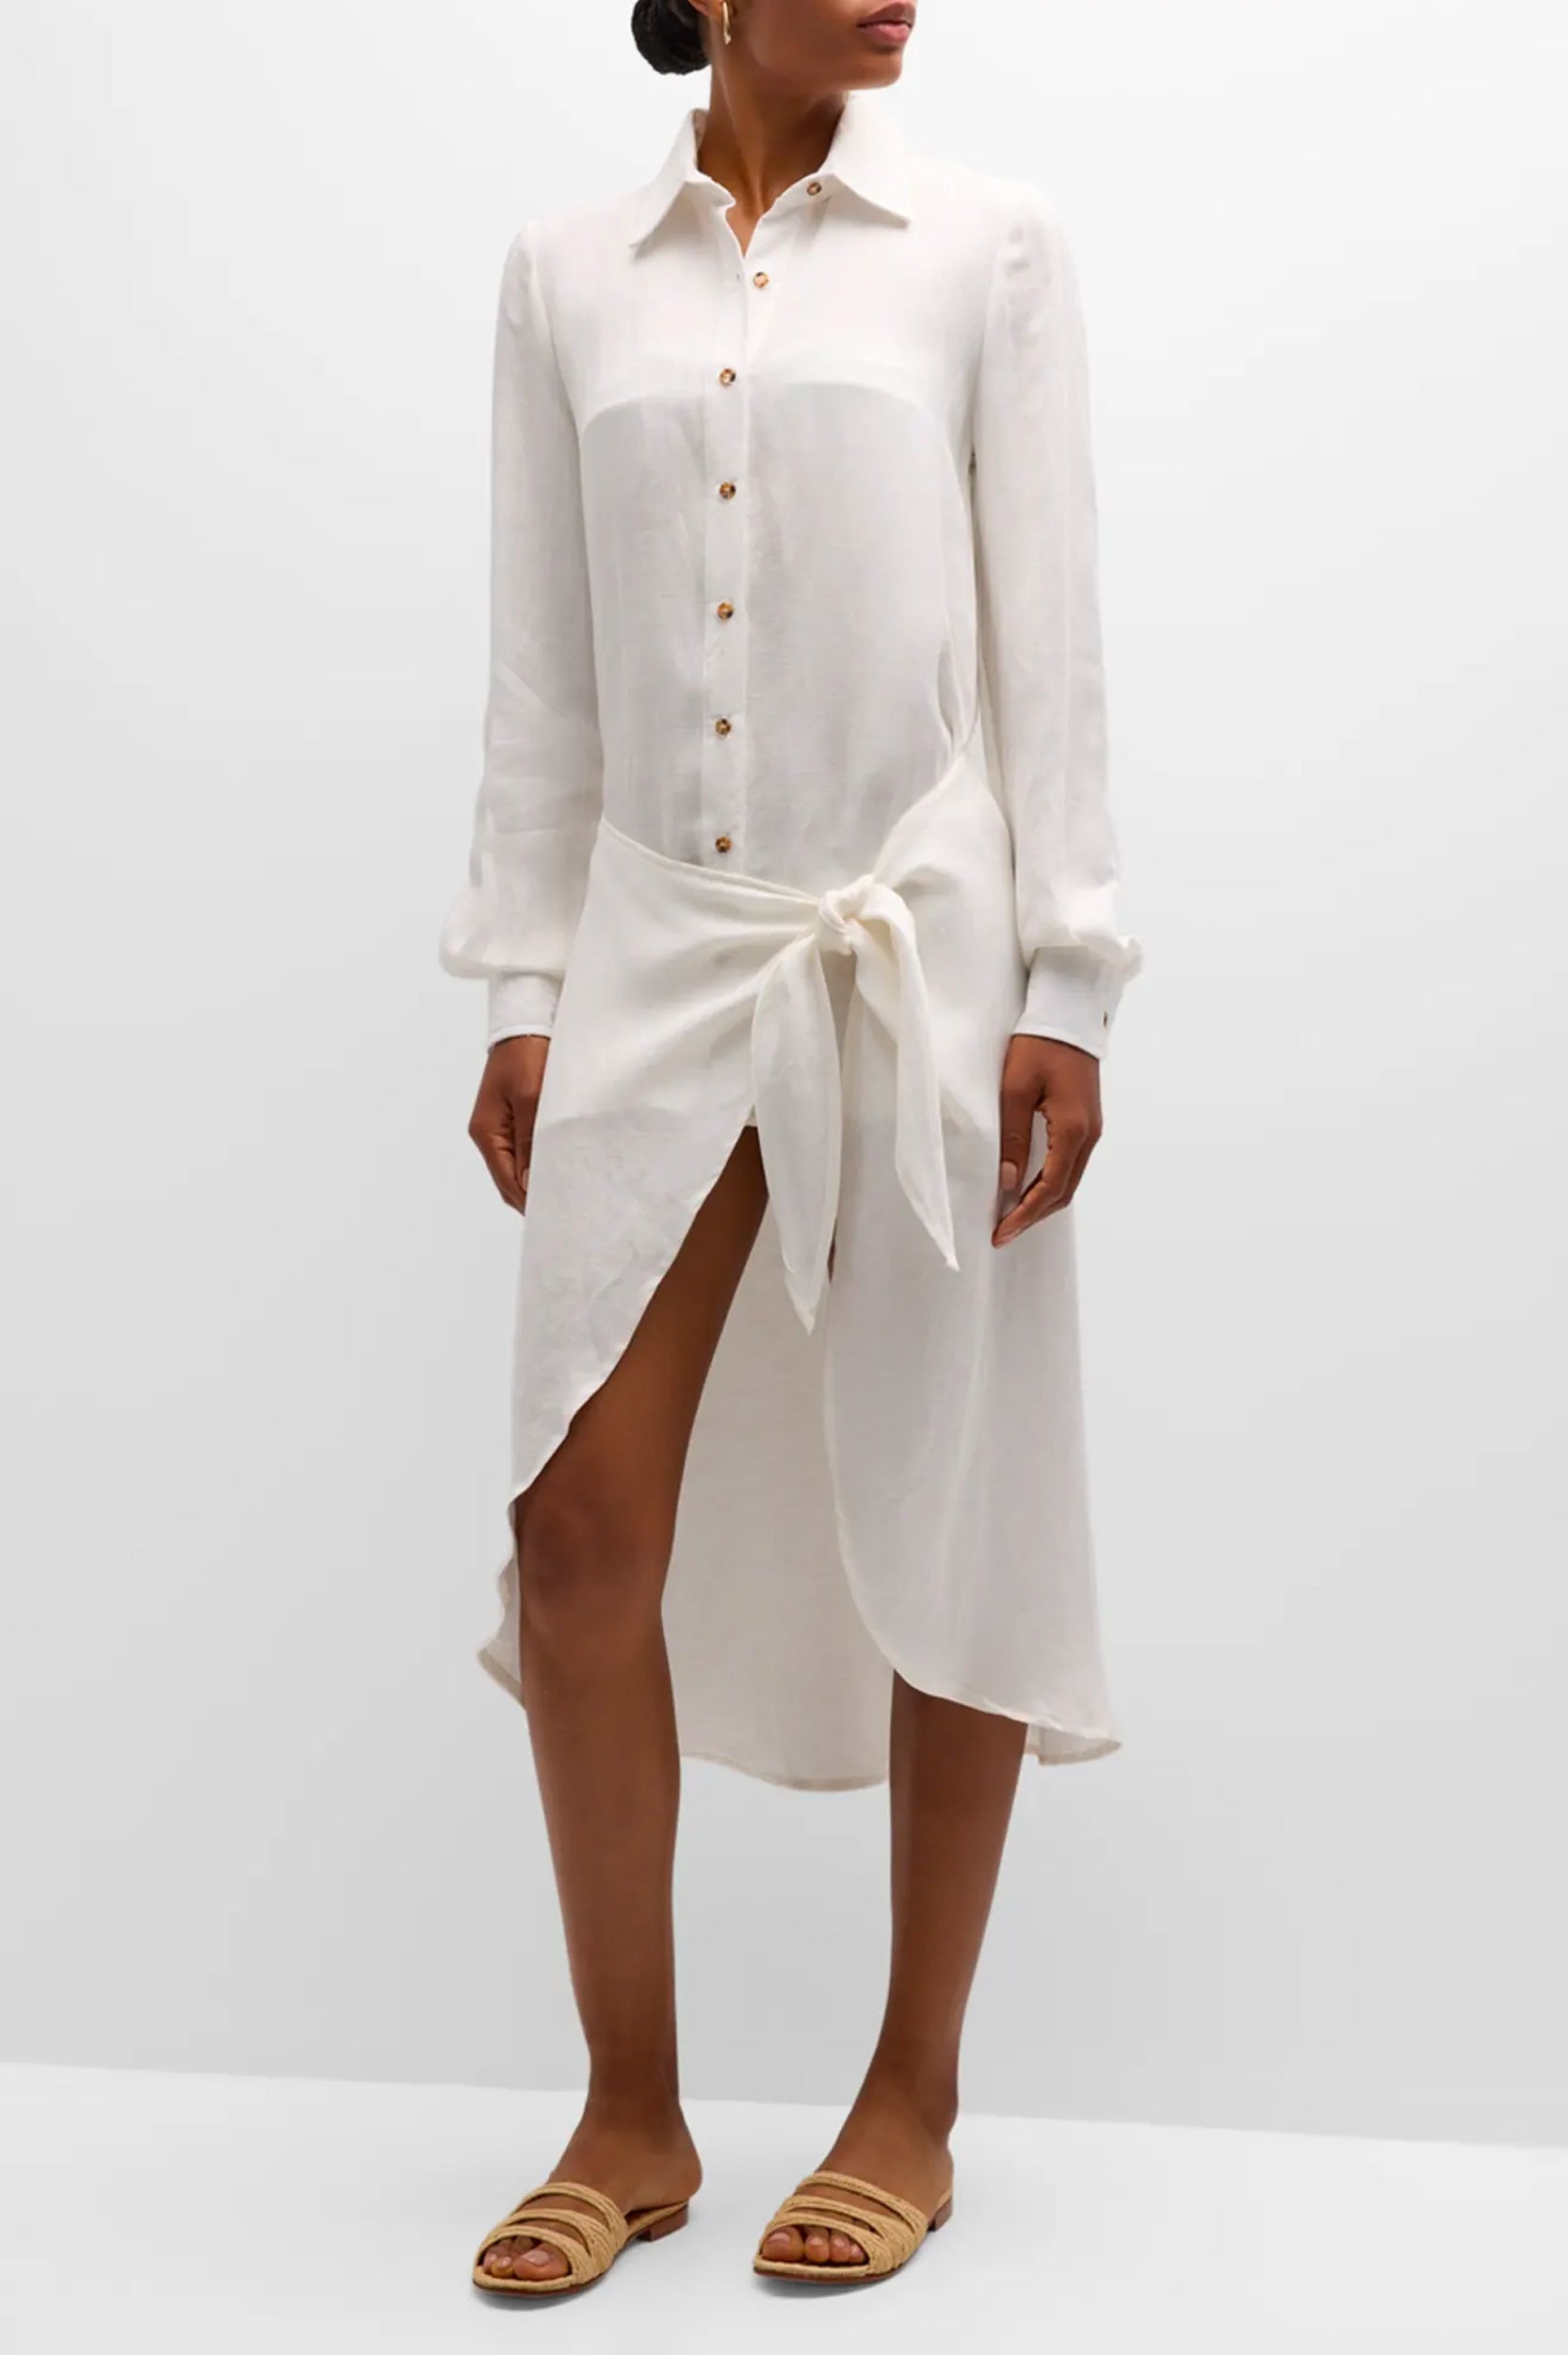 The LA Asymmetric Wrap Dress in White